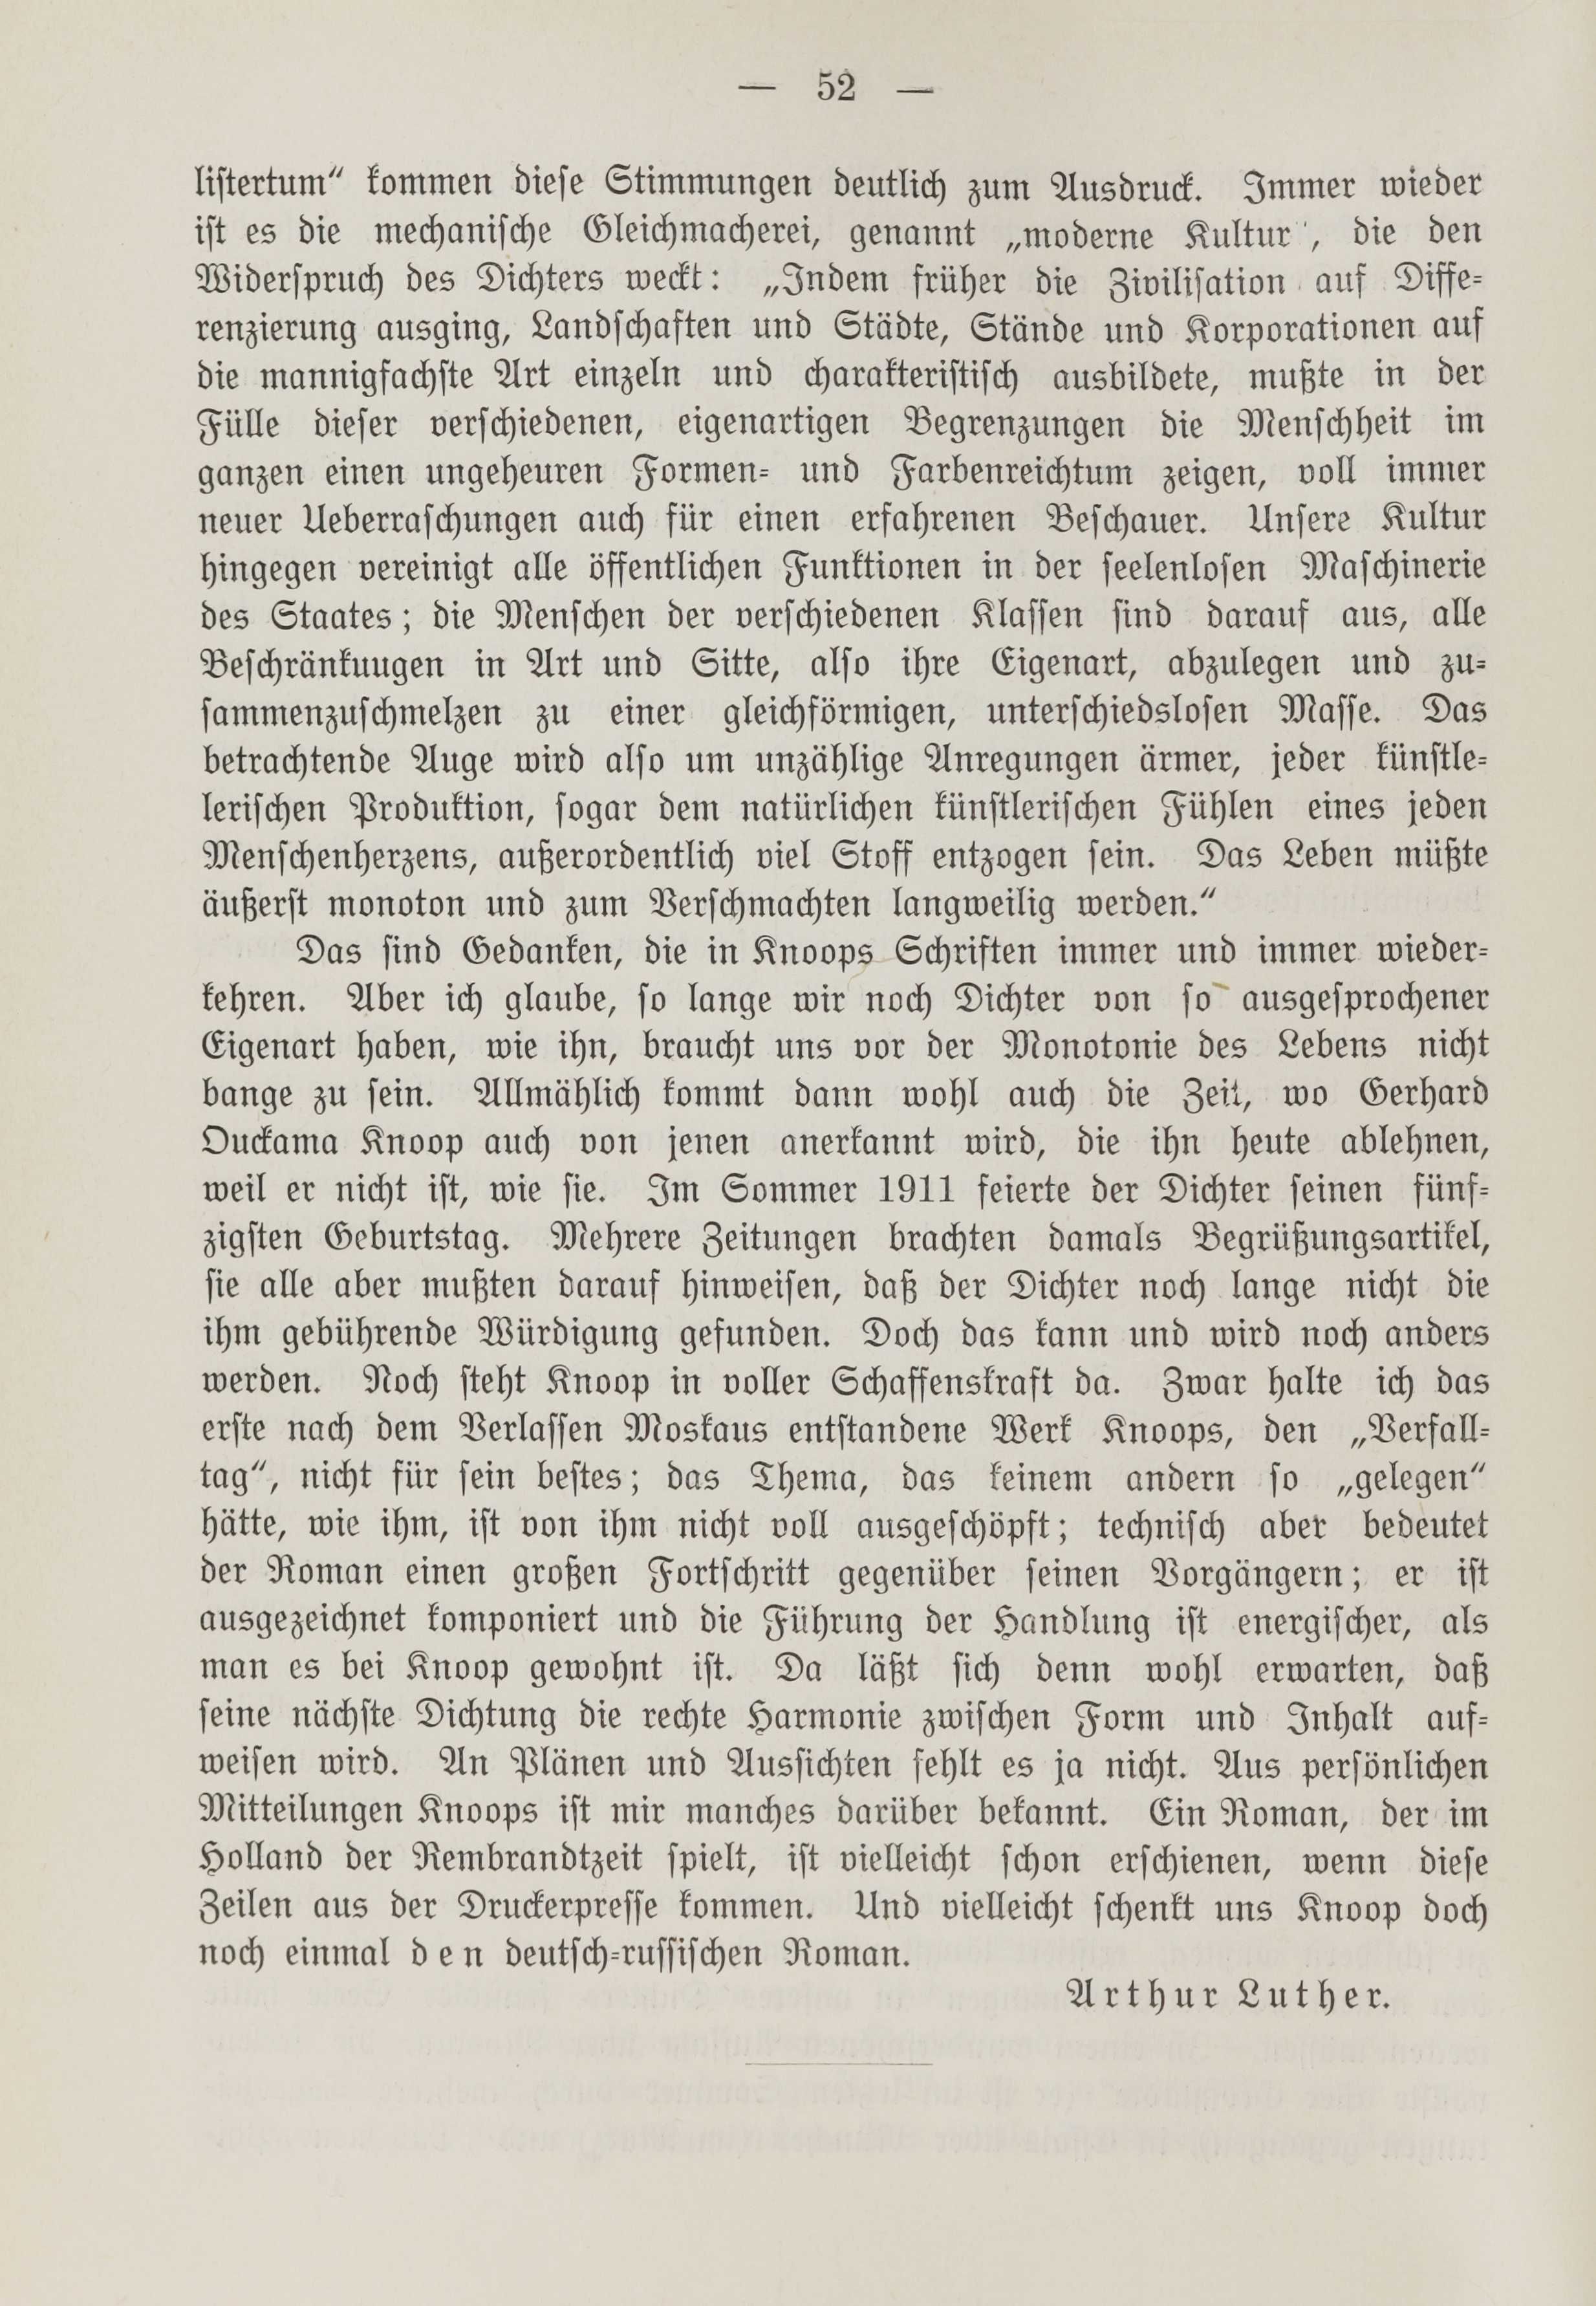 Deutsche Monatsschrift für Russland [1] (1912) | 59. (52) Основной текст